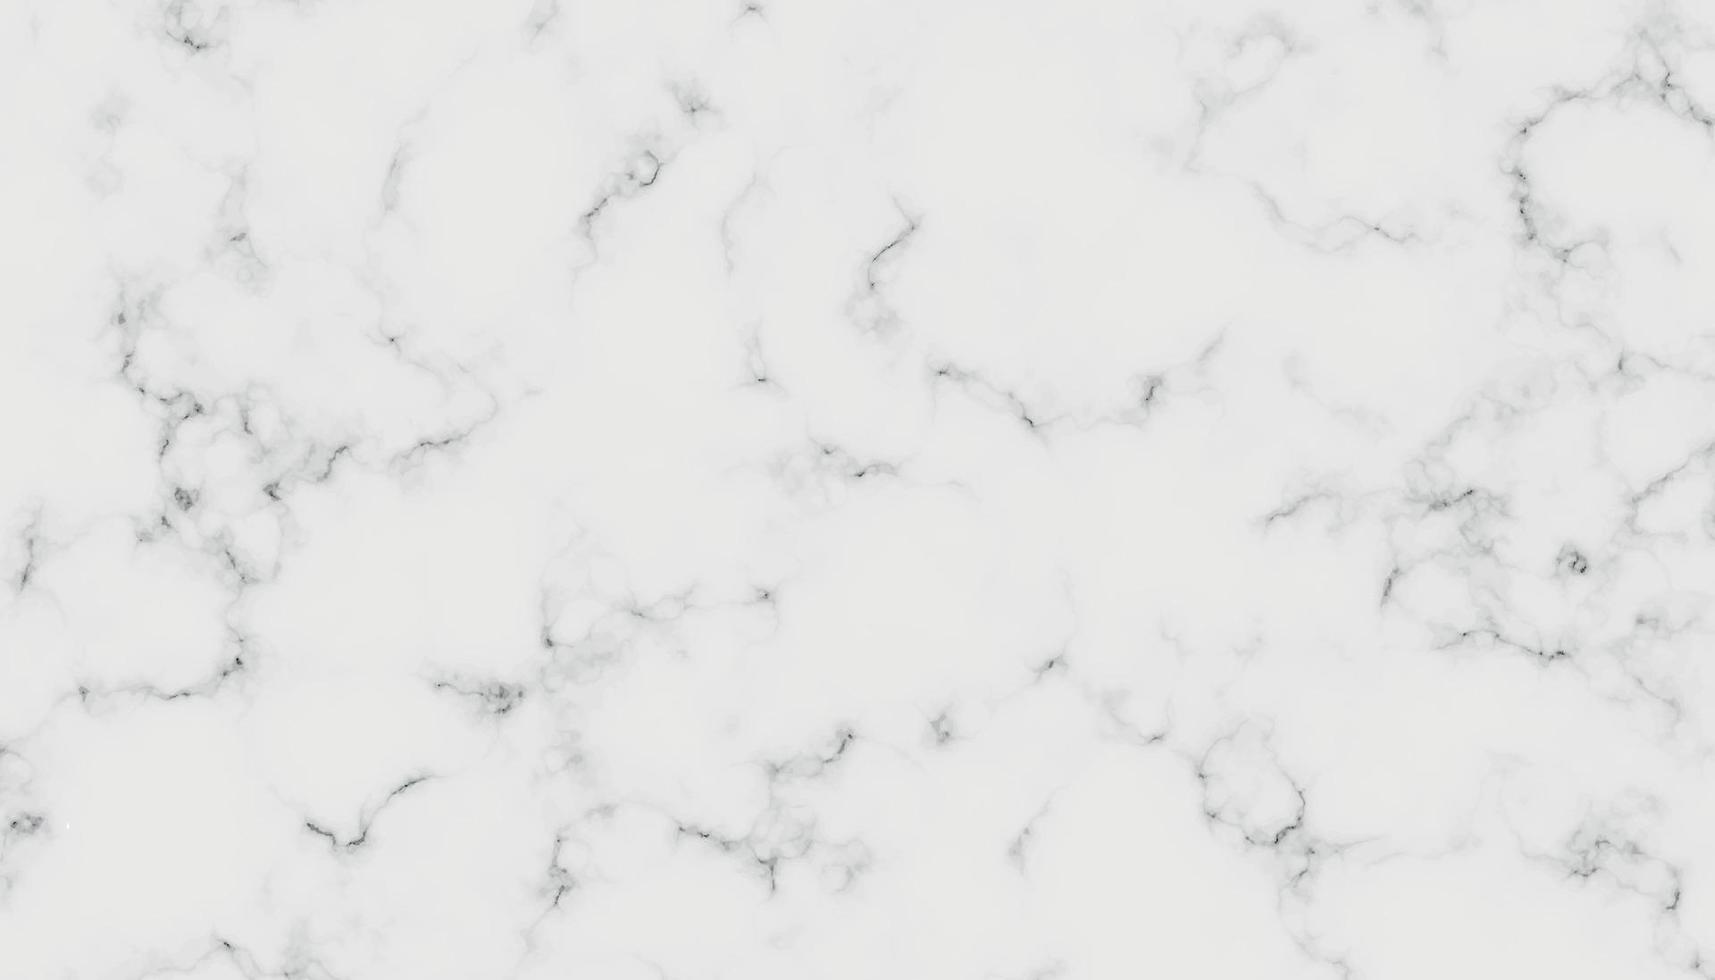 textura de fondo de mármol blanco patrón de piedra natural.resumen luz elegante negro para hacer piso textura de mostrador de cerámica losa de piedra azulejo liso gris plata.textura de mármol para azulejo de piel diseño lujoso vector